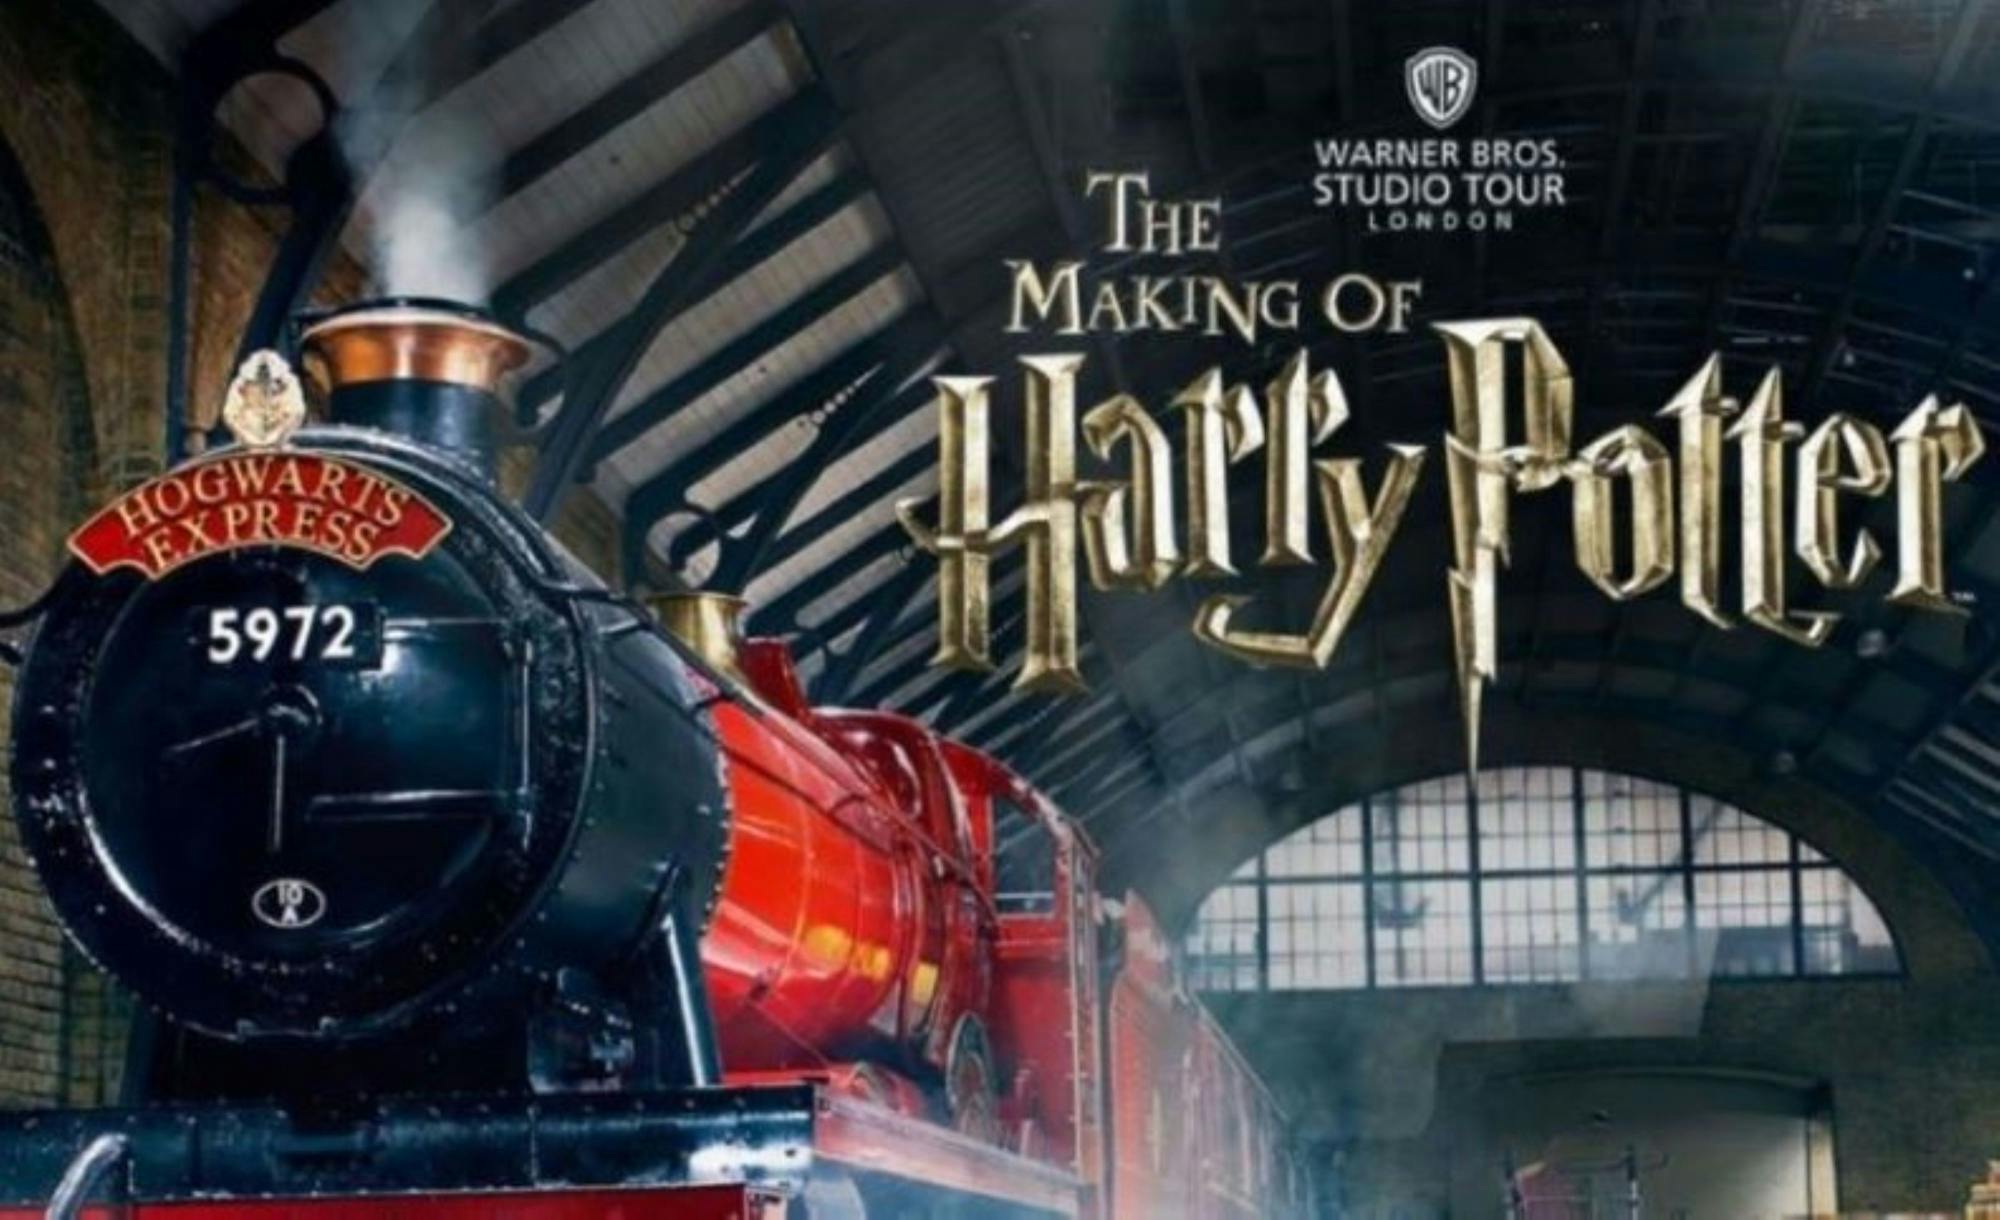 "The Making of Harry Potter" de Birmingham en classe standard